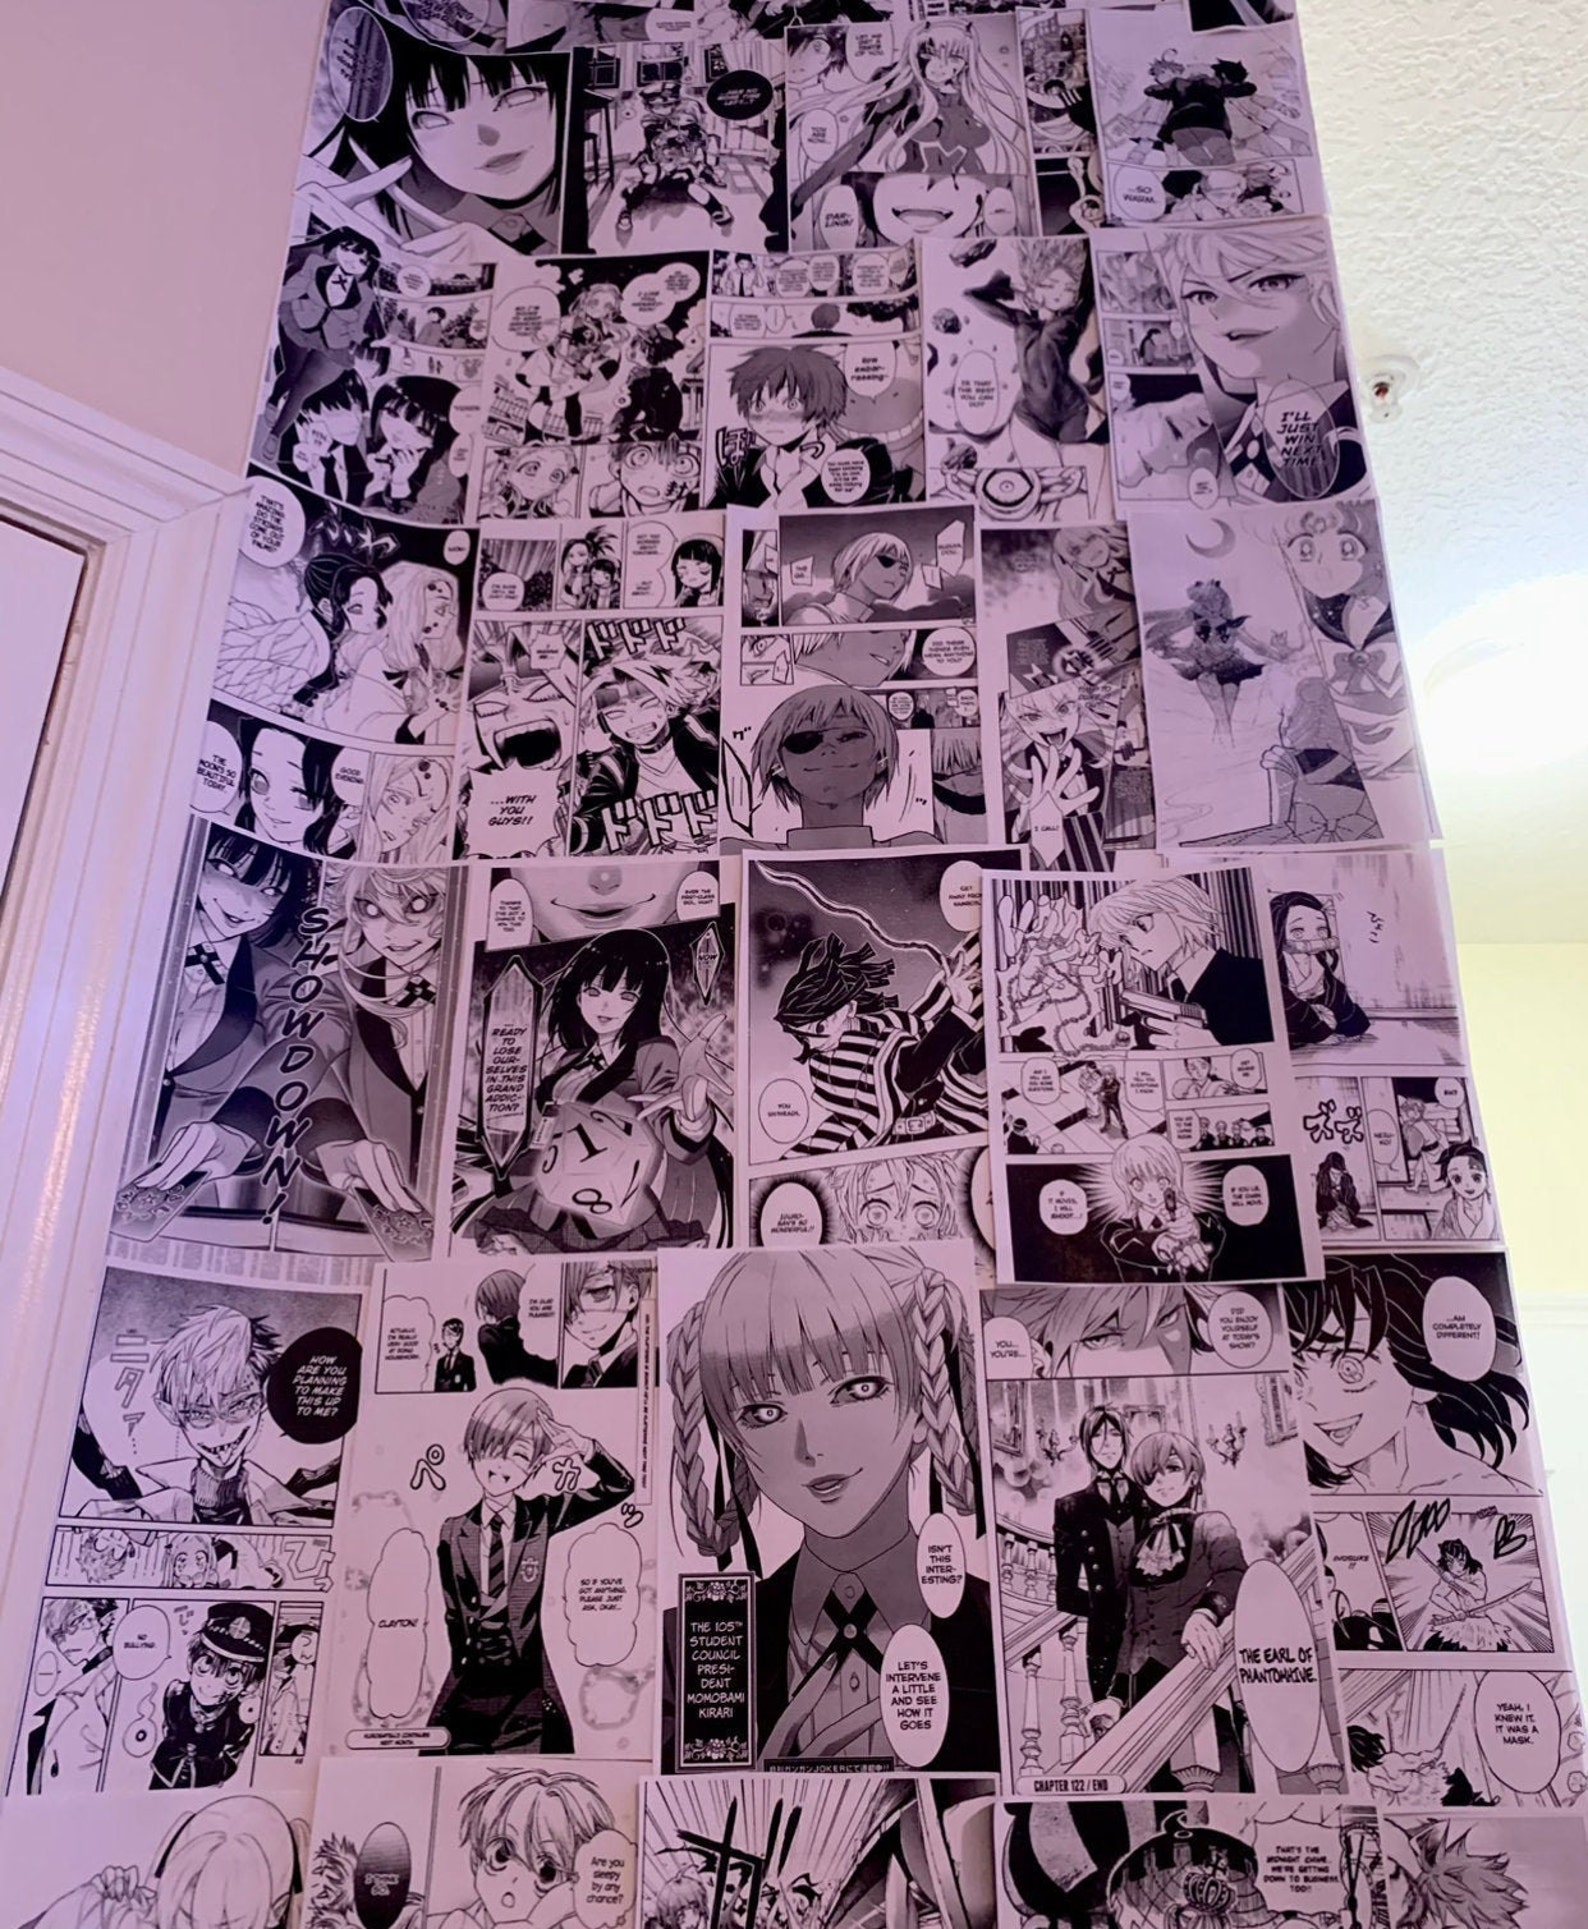 Aesthetic Anime Wall Collage Manga Panels 60 Pcs Etsy